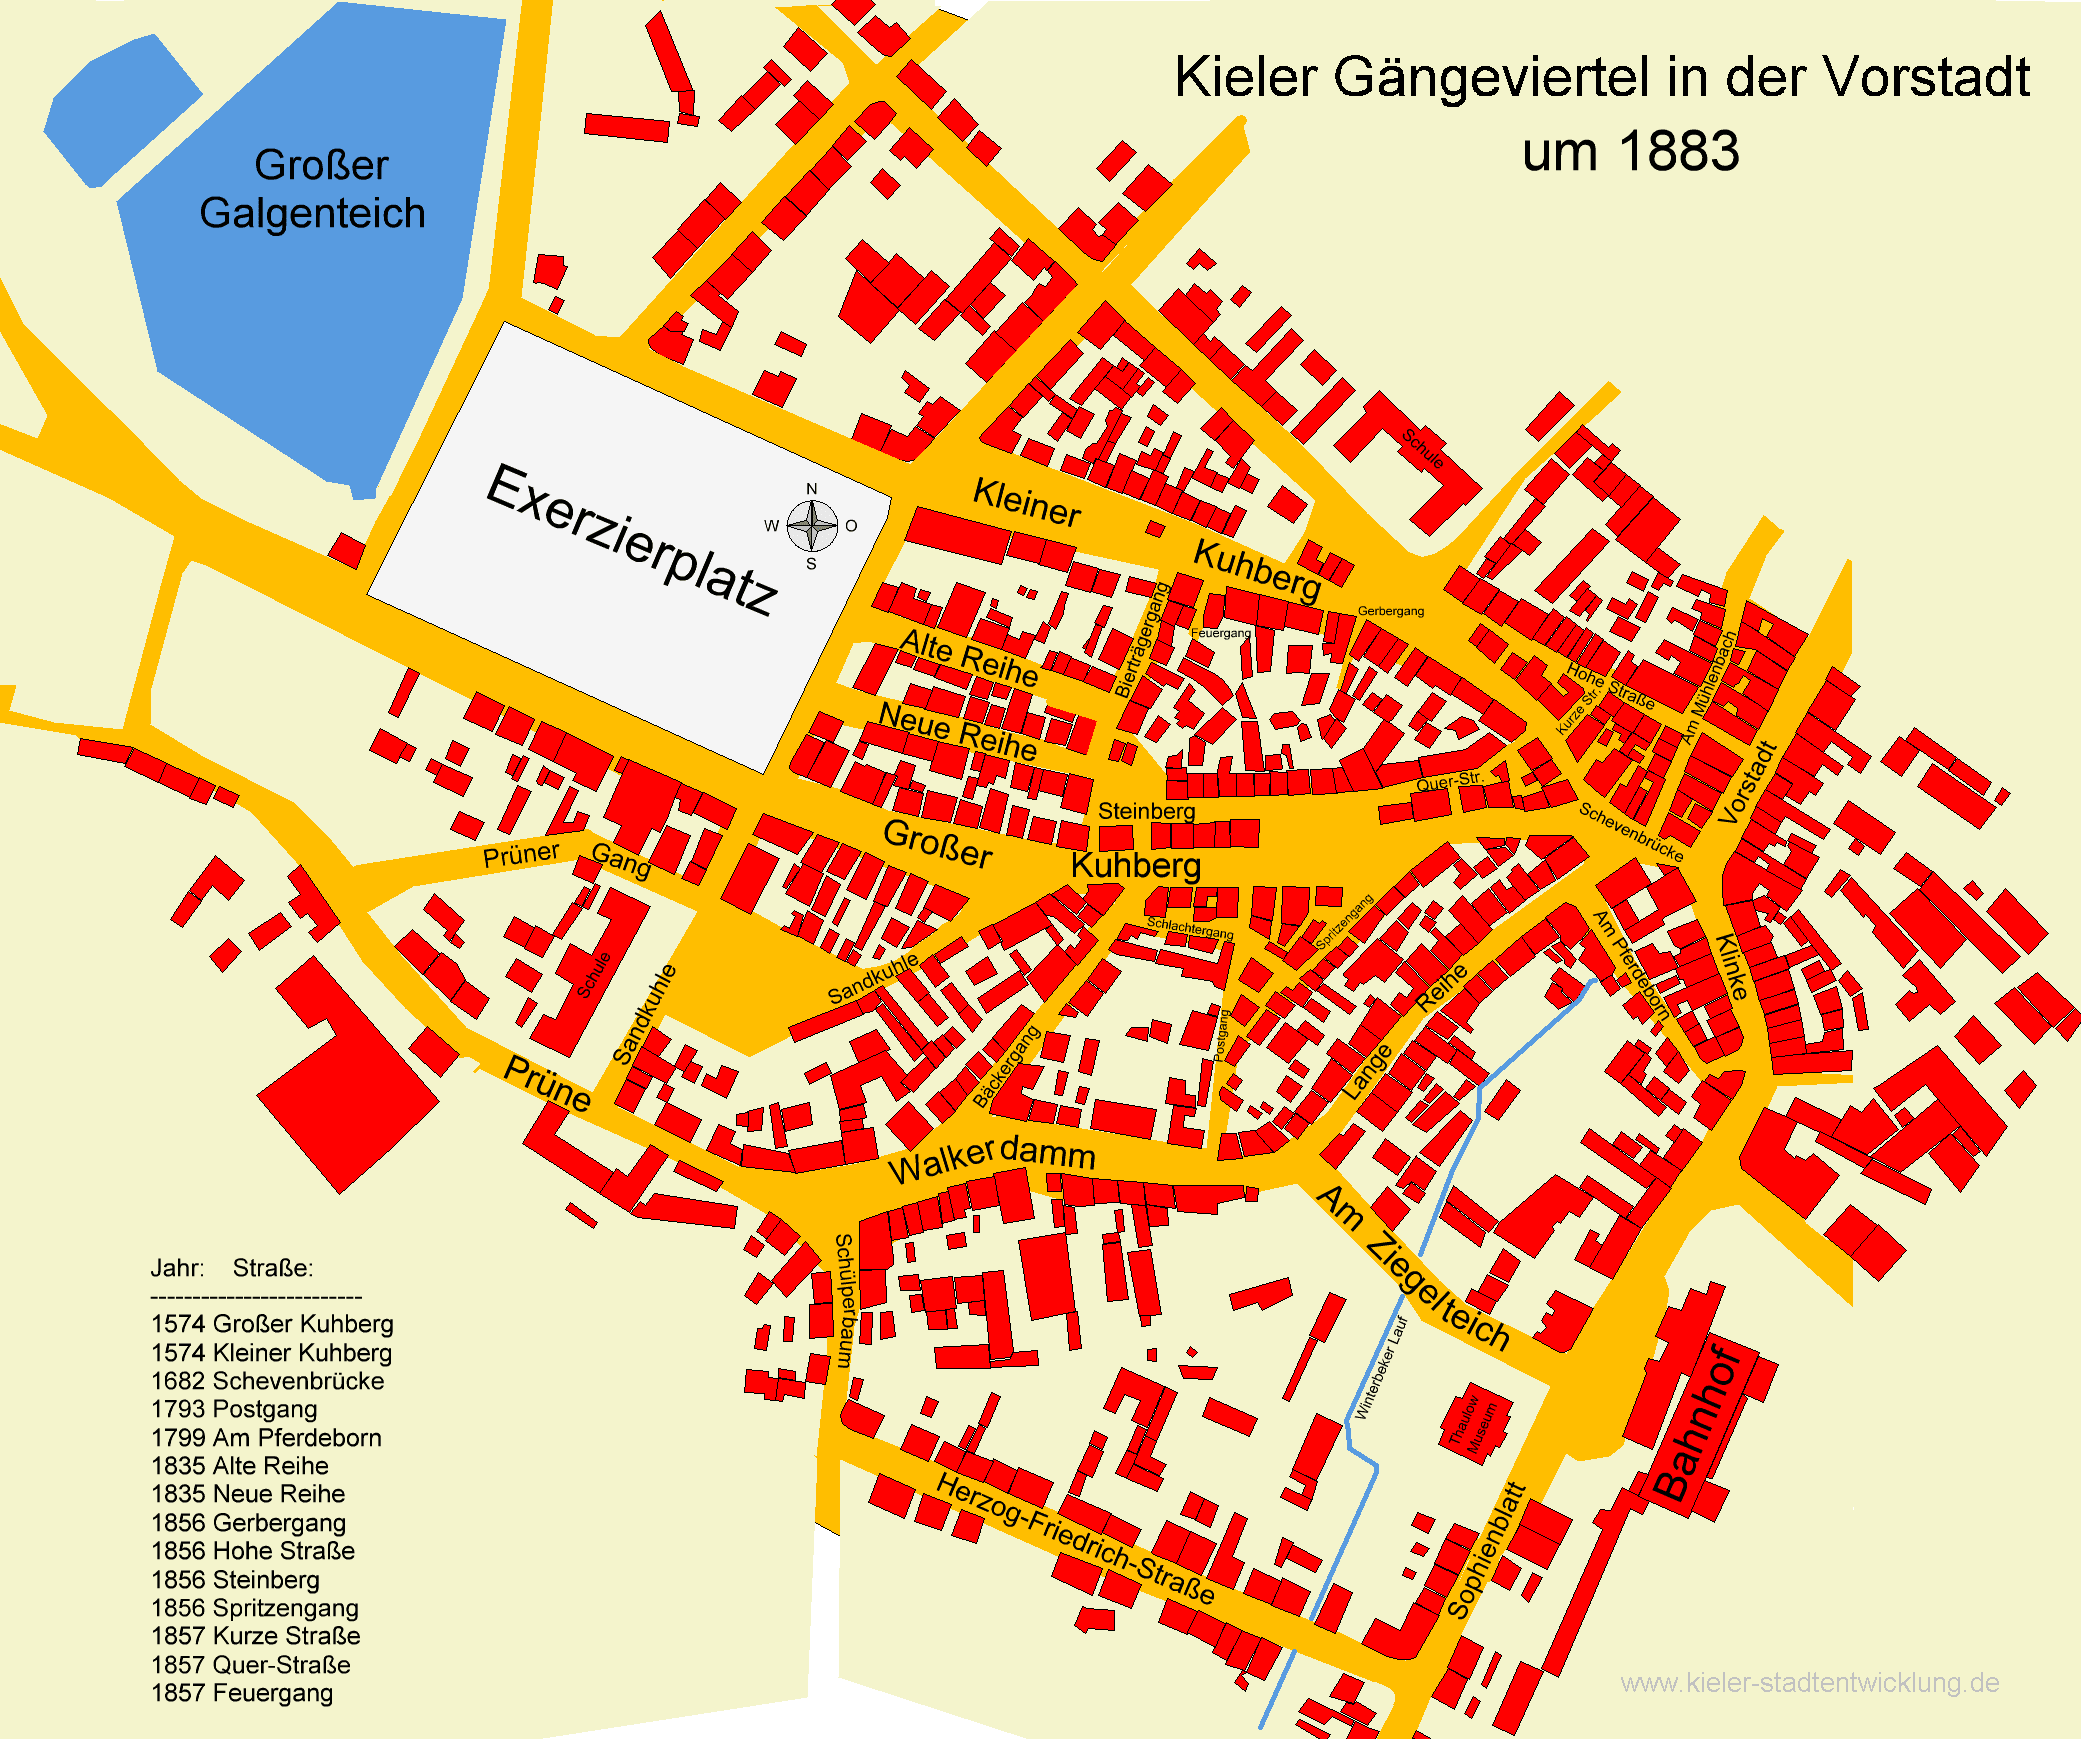 Kieler Gngeviertel 1883